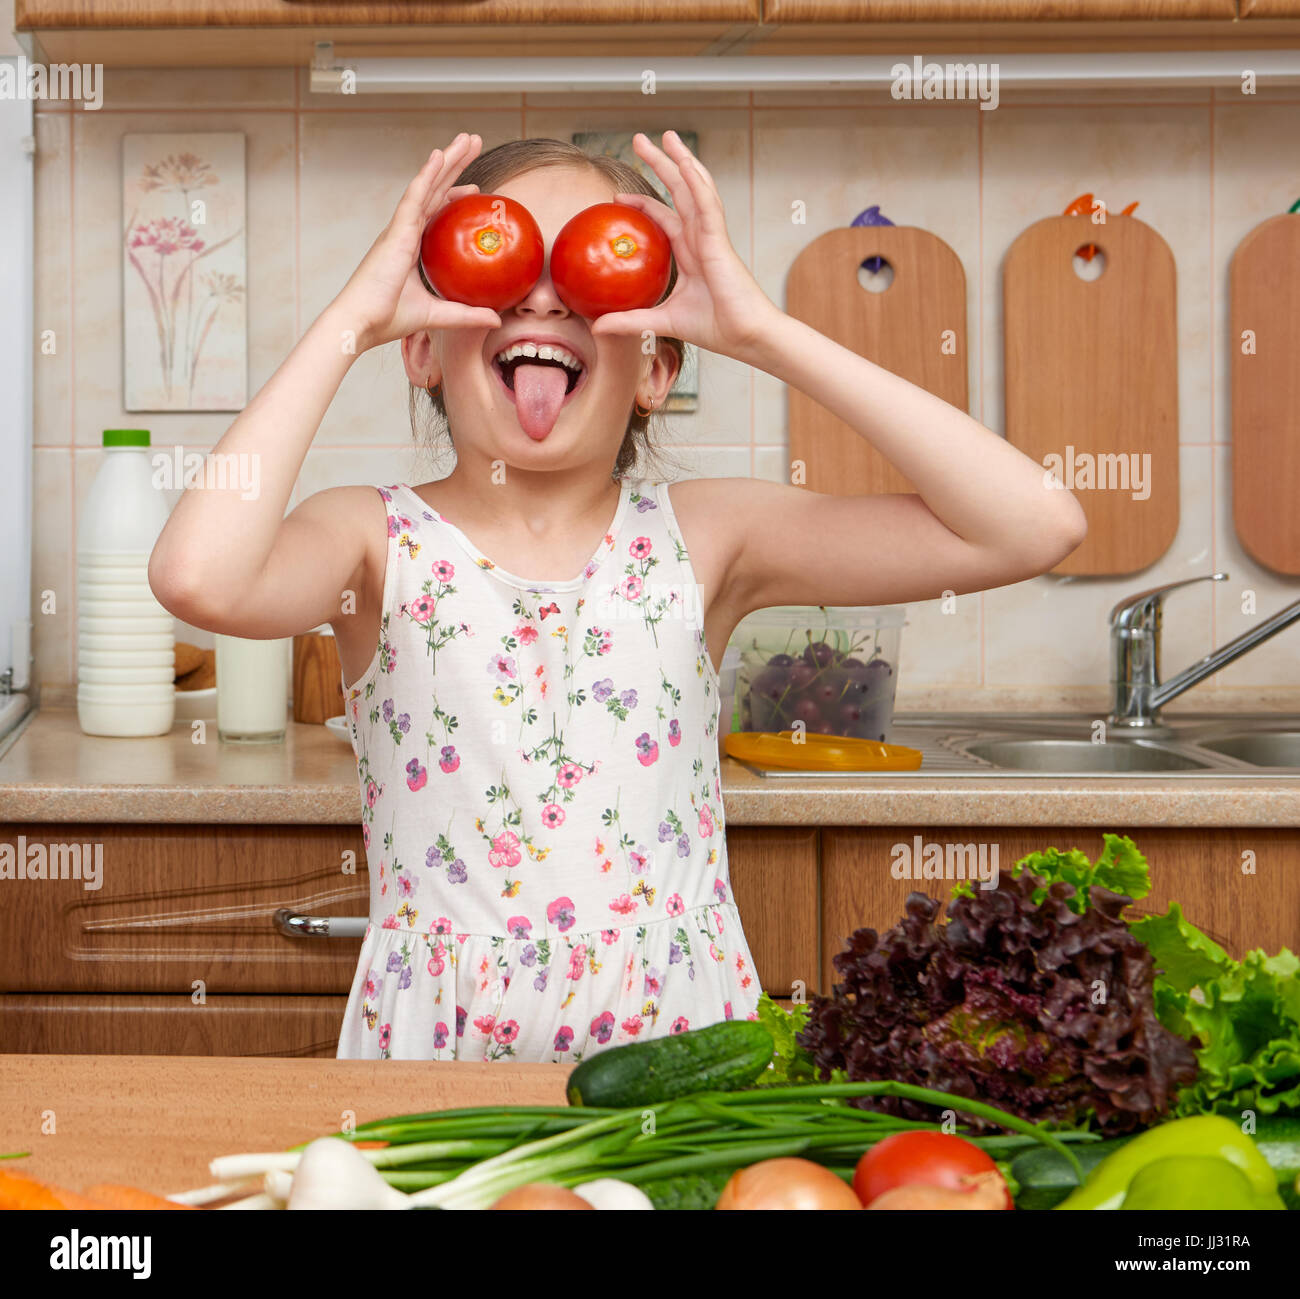 Fille enfant s'amusant avec tomates, regarder à travers comme des jumelles, des fruits et légumes dans la maison cuisine intérieur, concept d'aliments sains Banque D'Images